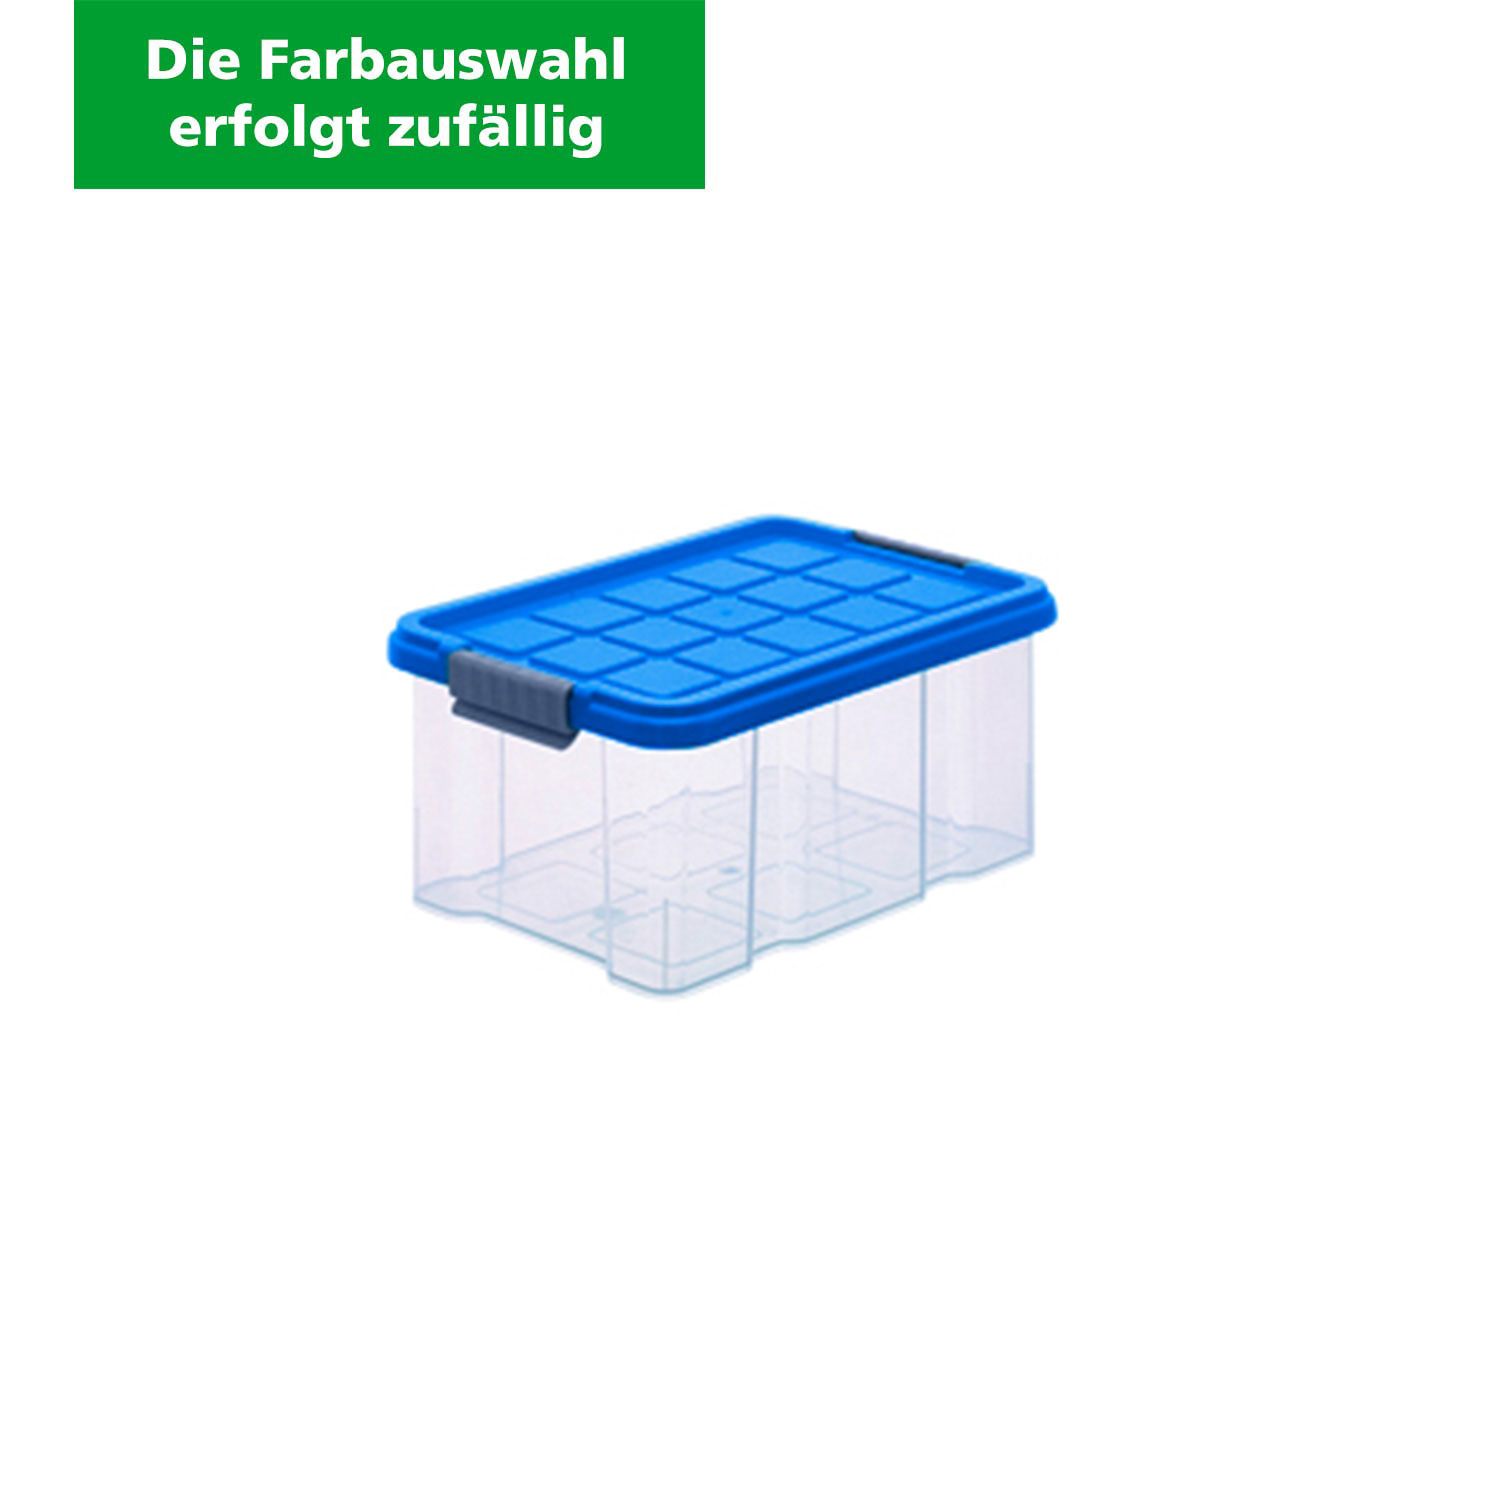 Aufbewahrungsbox "Eurobox" 5 L , Kunststoffbox (Die Farbauswahl erfolgt zufällig)